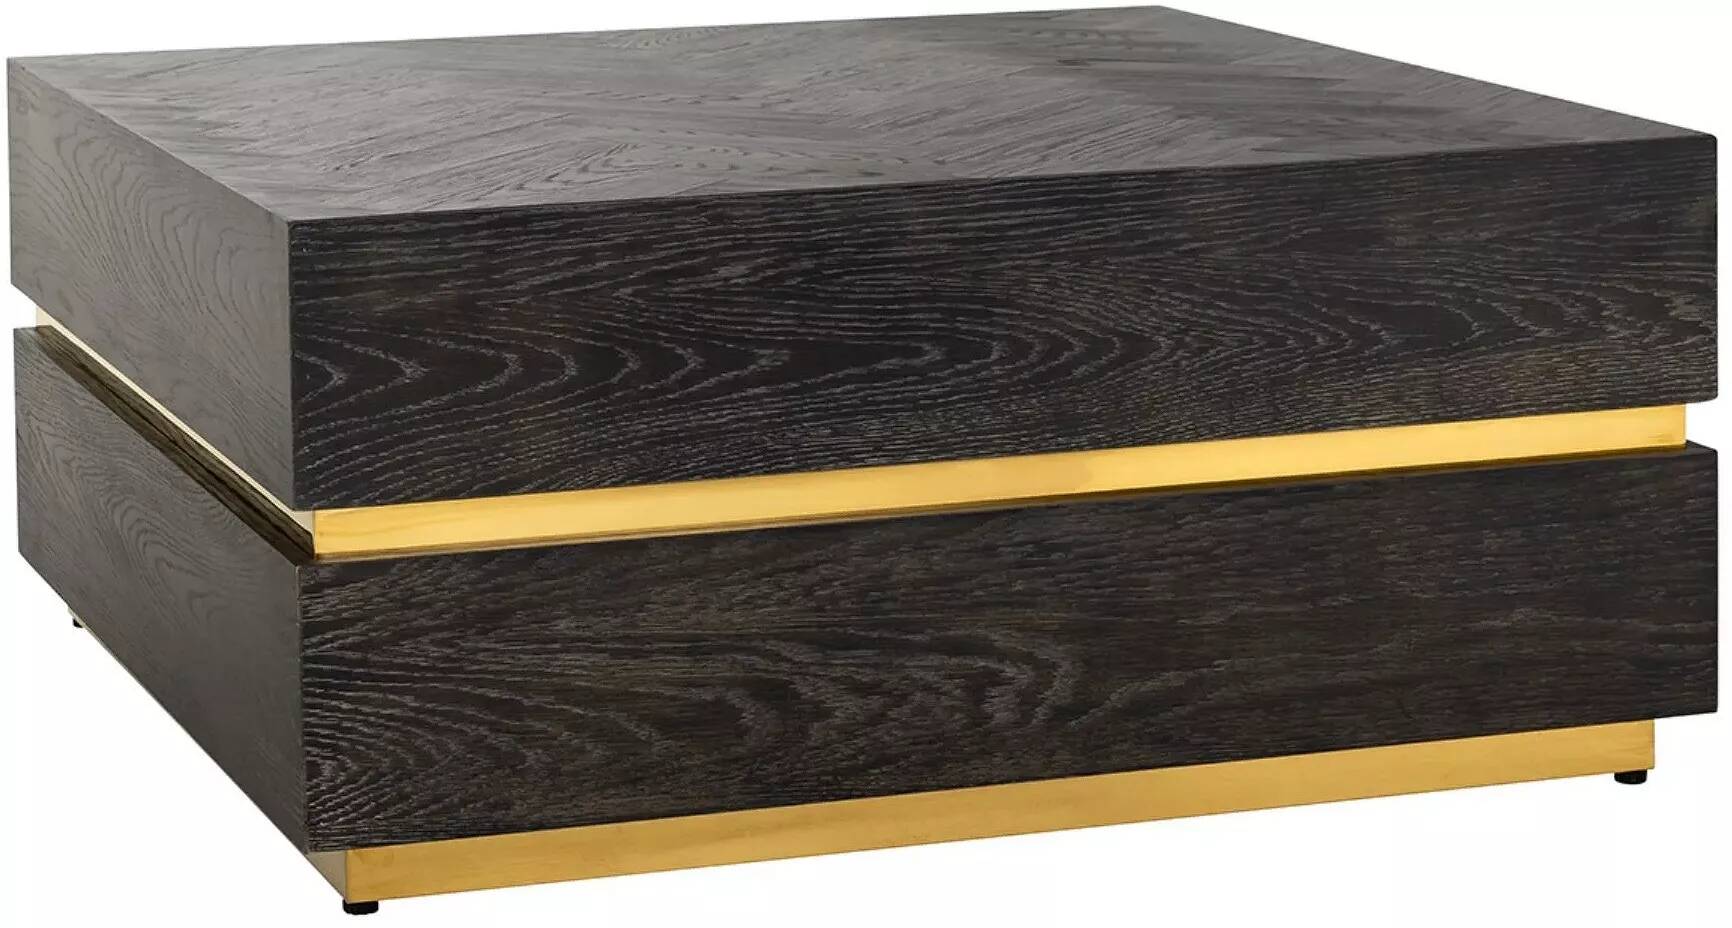 Table basse en bois chêne noir et acier doré